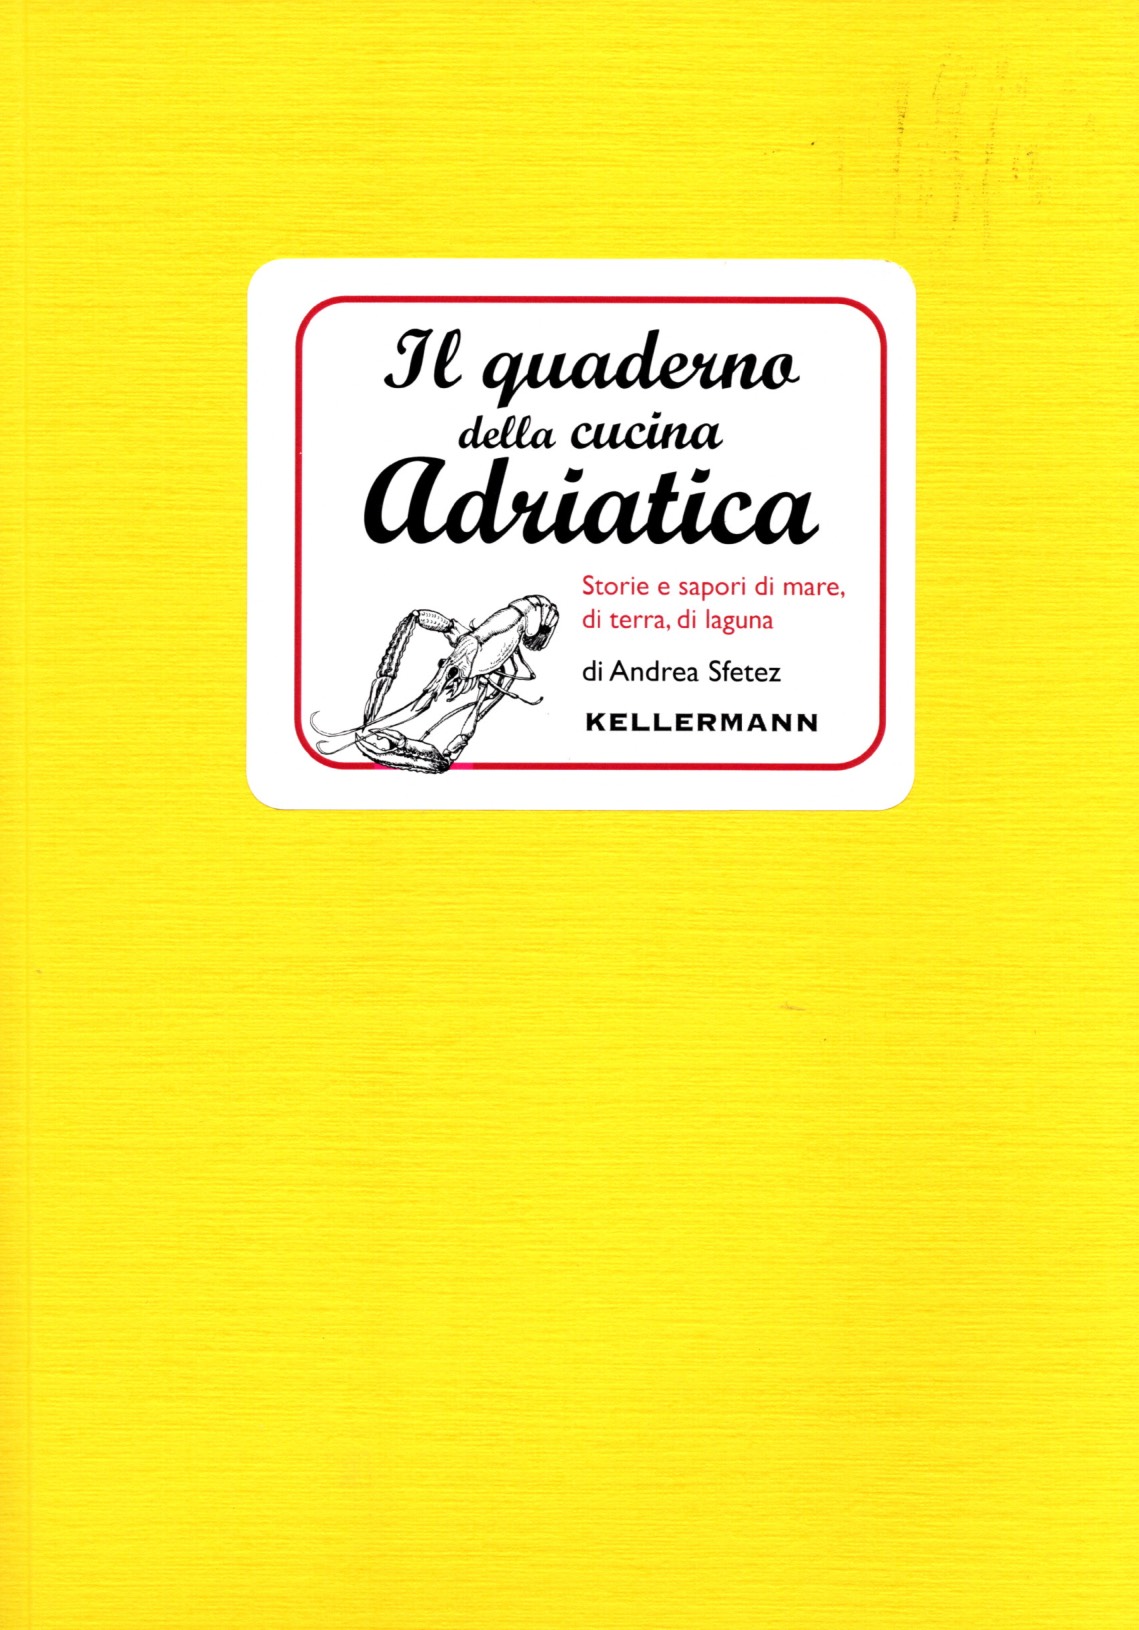 Il Quaderno della cucina Adriatica